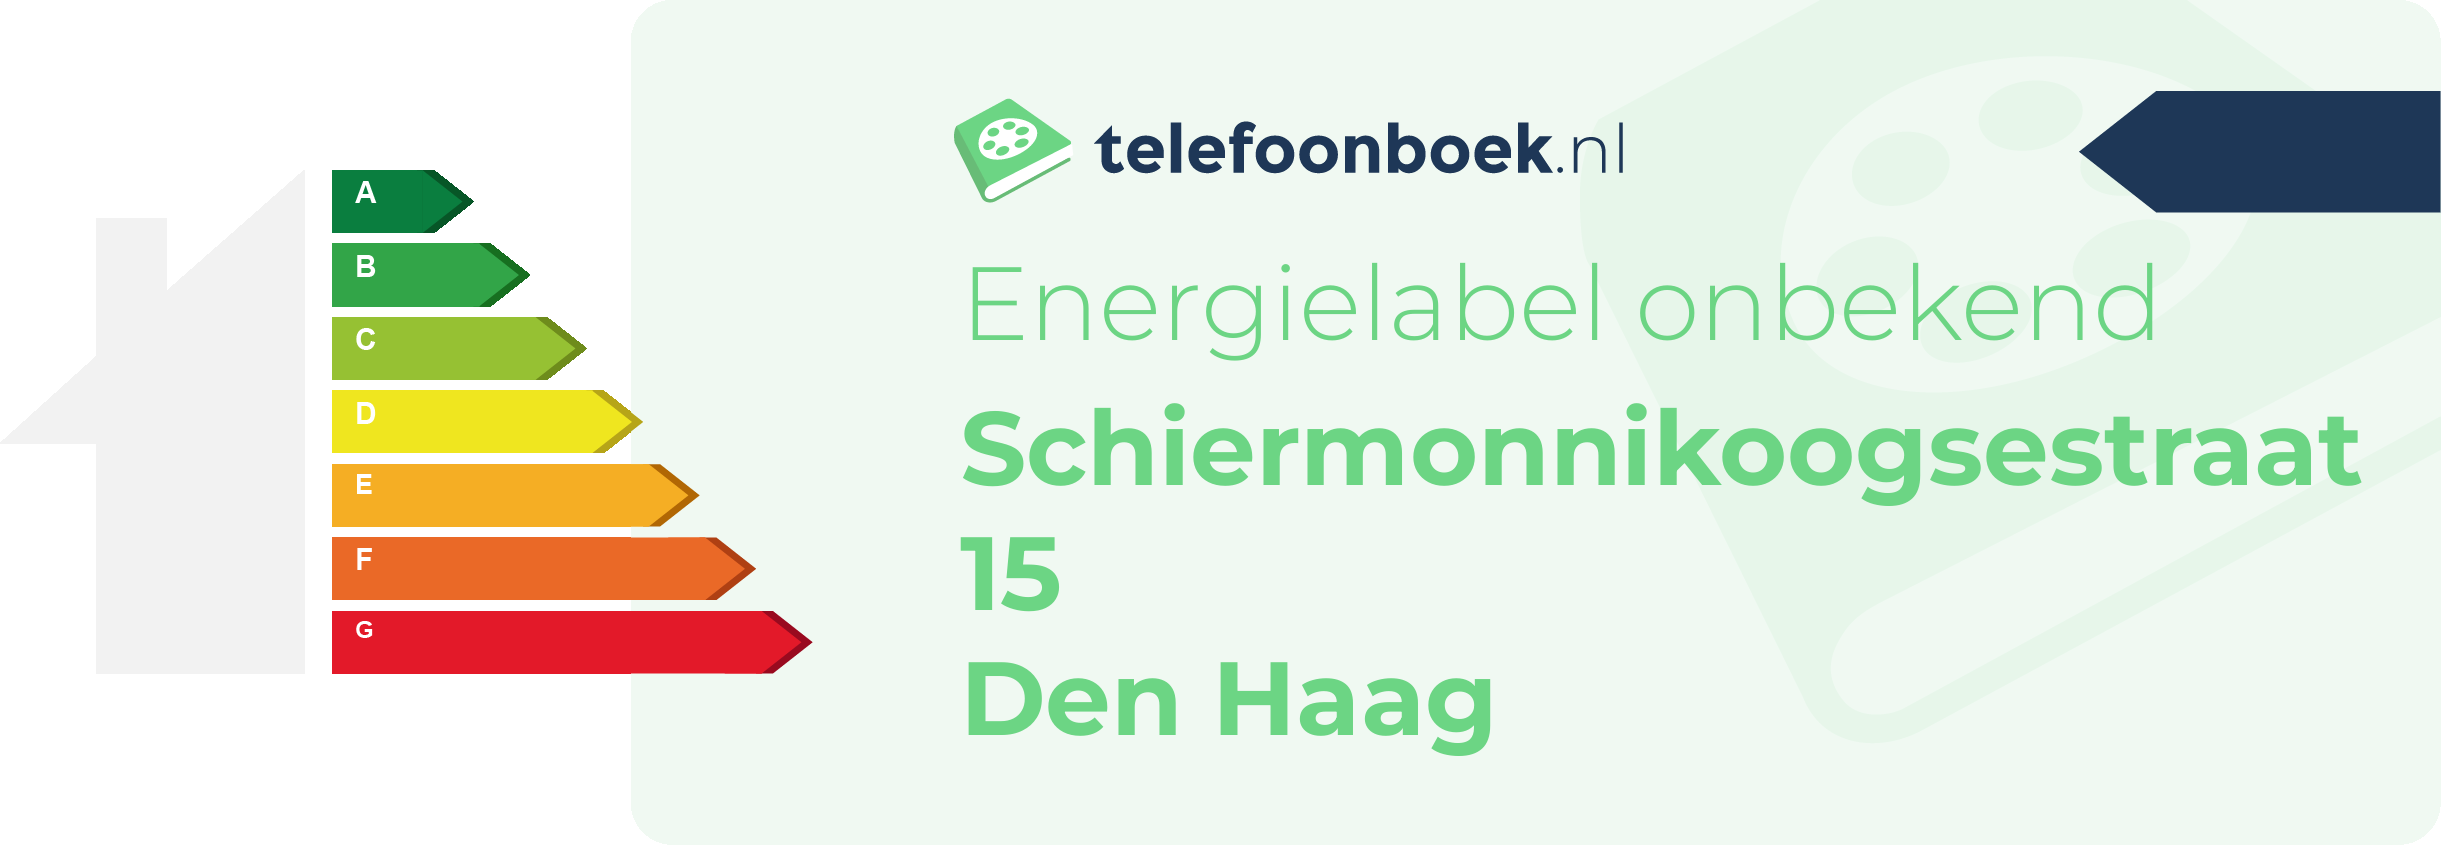 Energielabel Schiermonnikoogsestraat 15 Den Haag